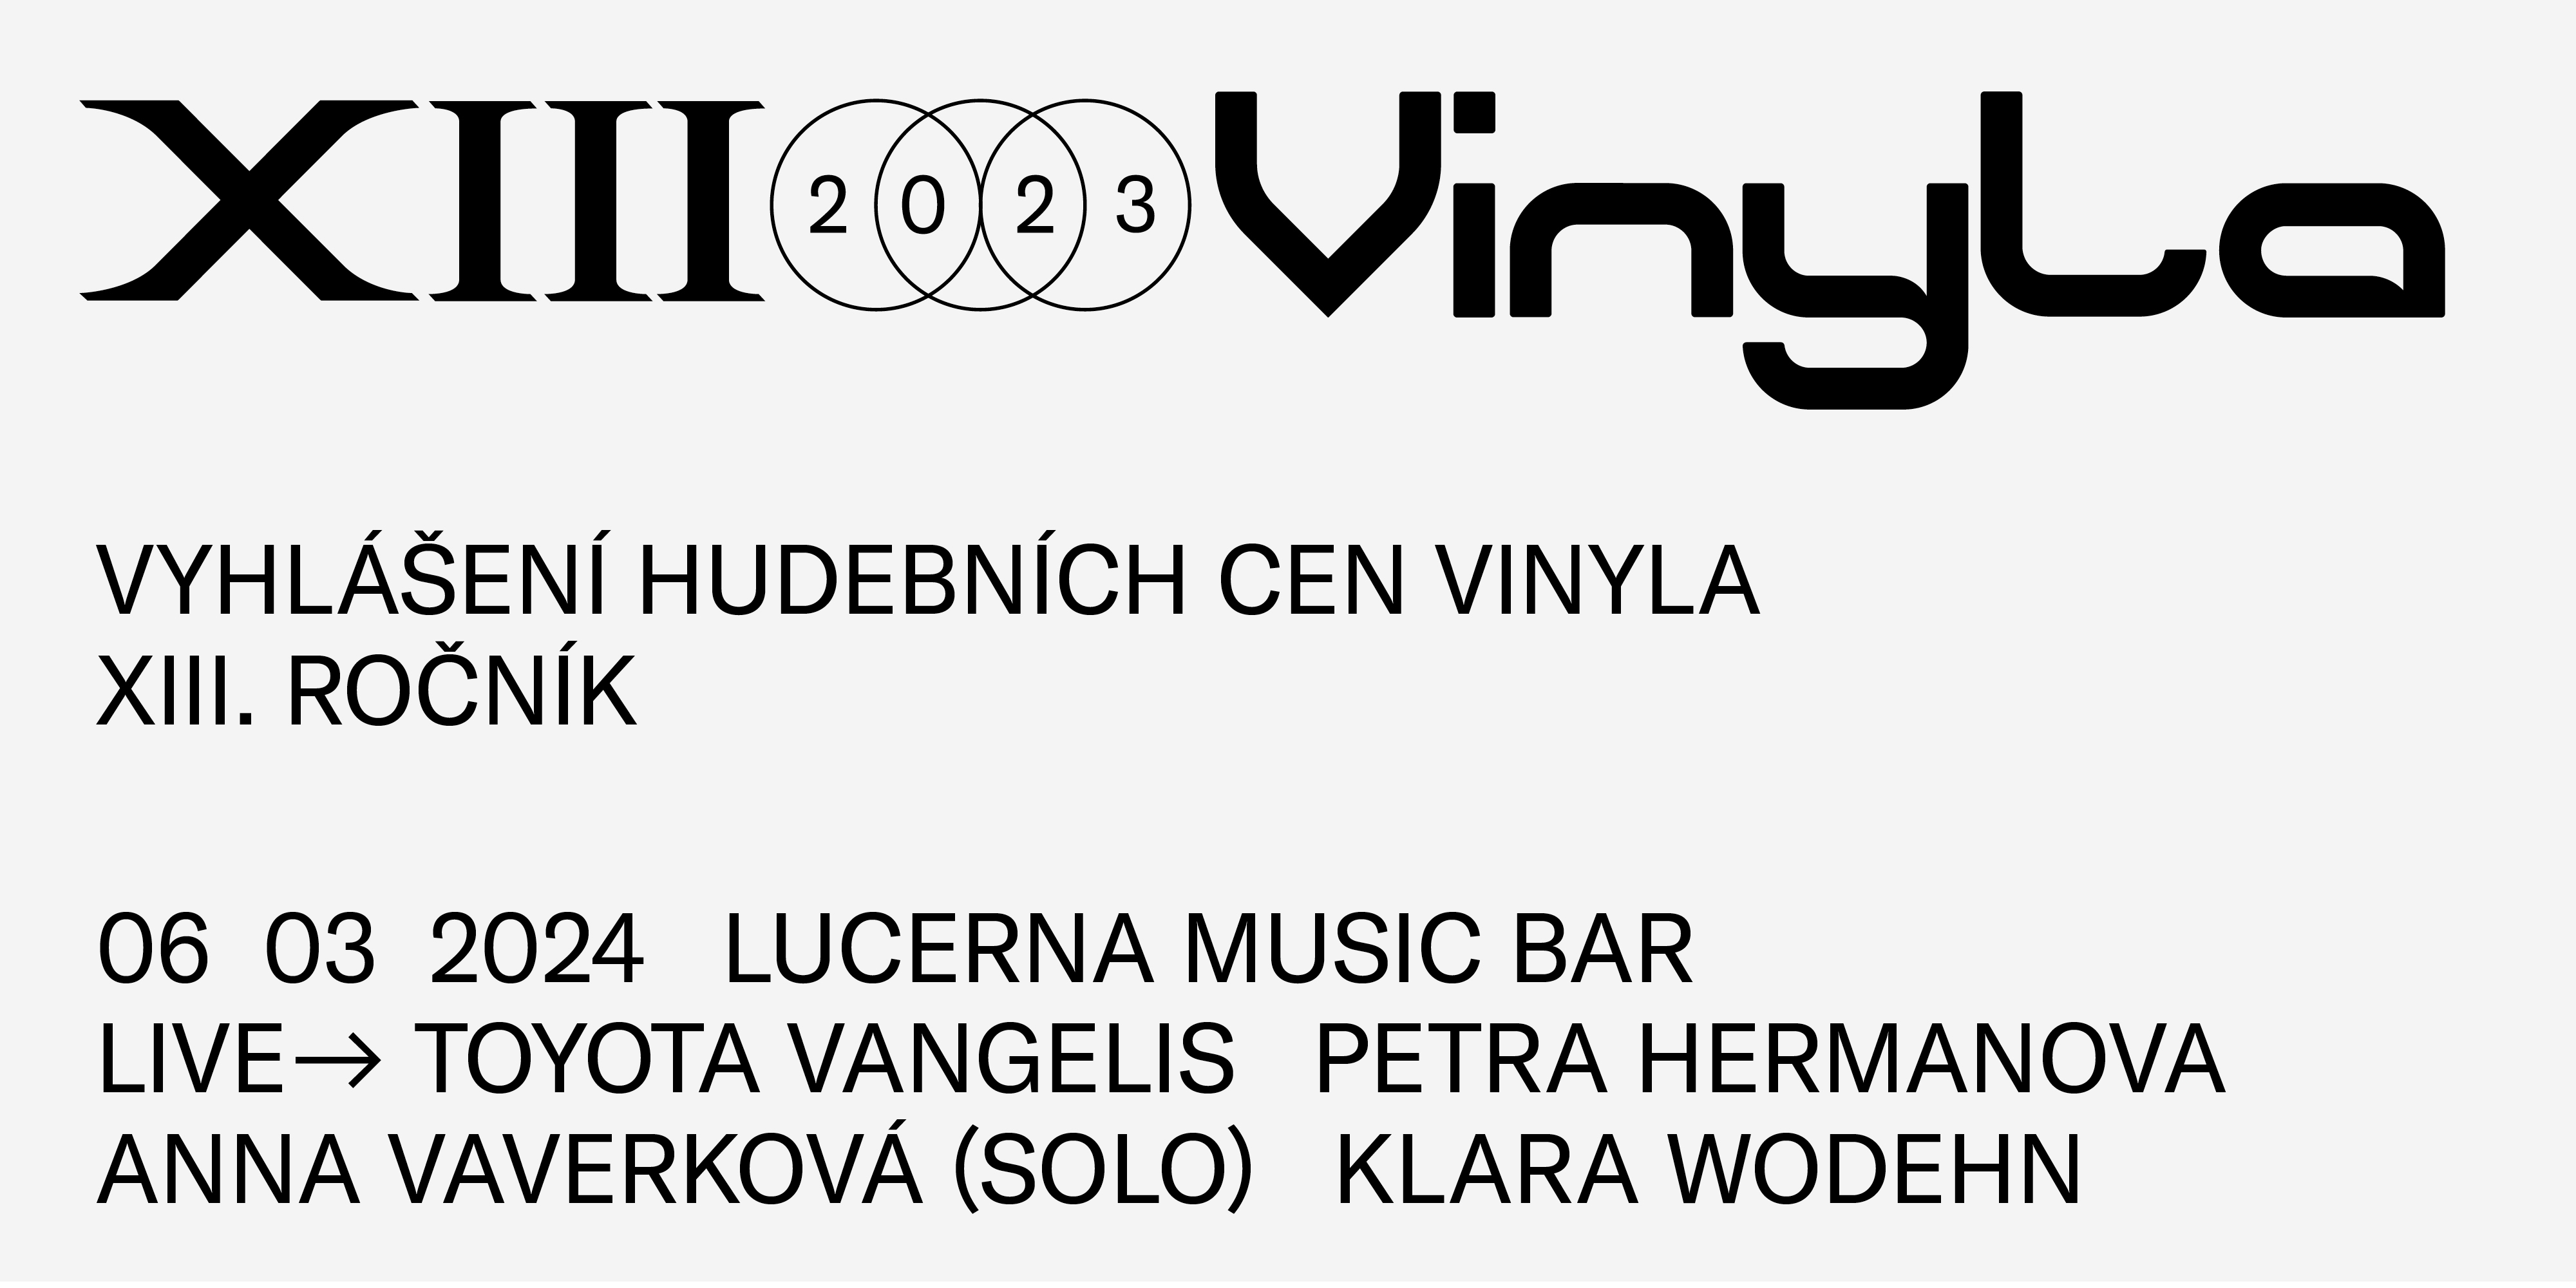 Vinyla 2023 se koná opět v Lucerna Music Baru